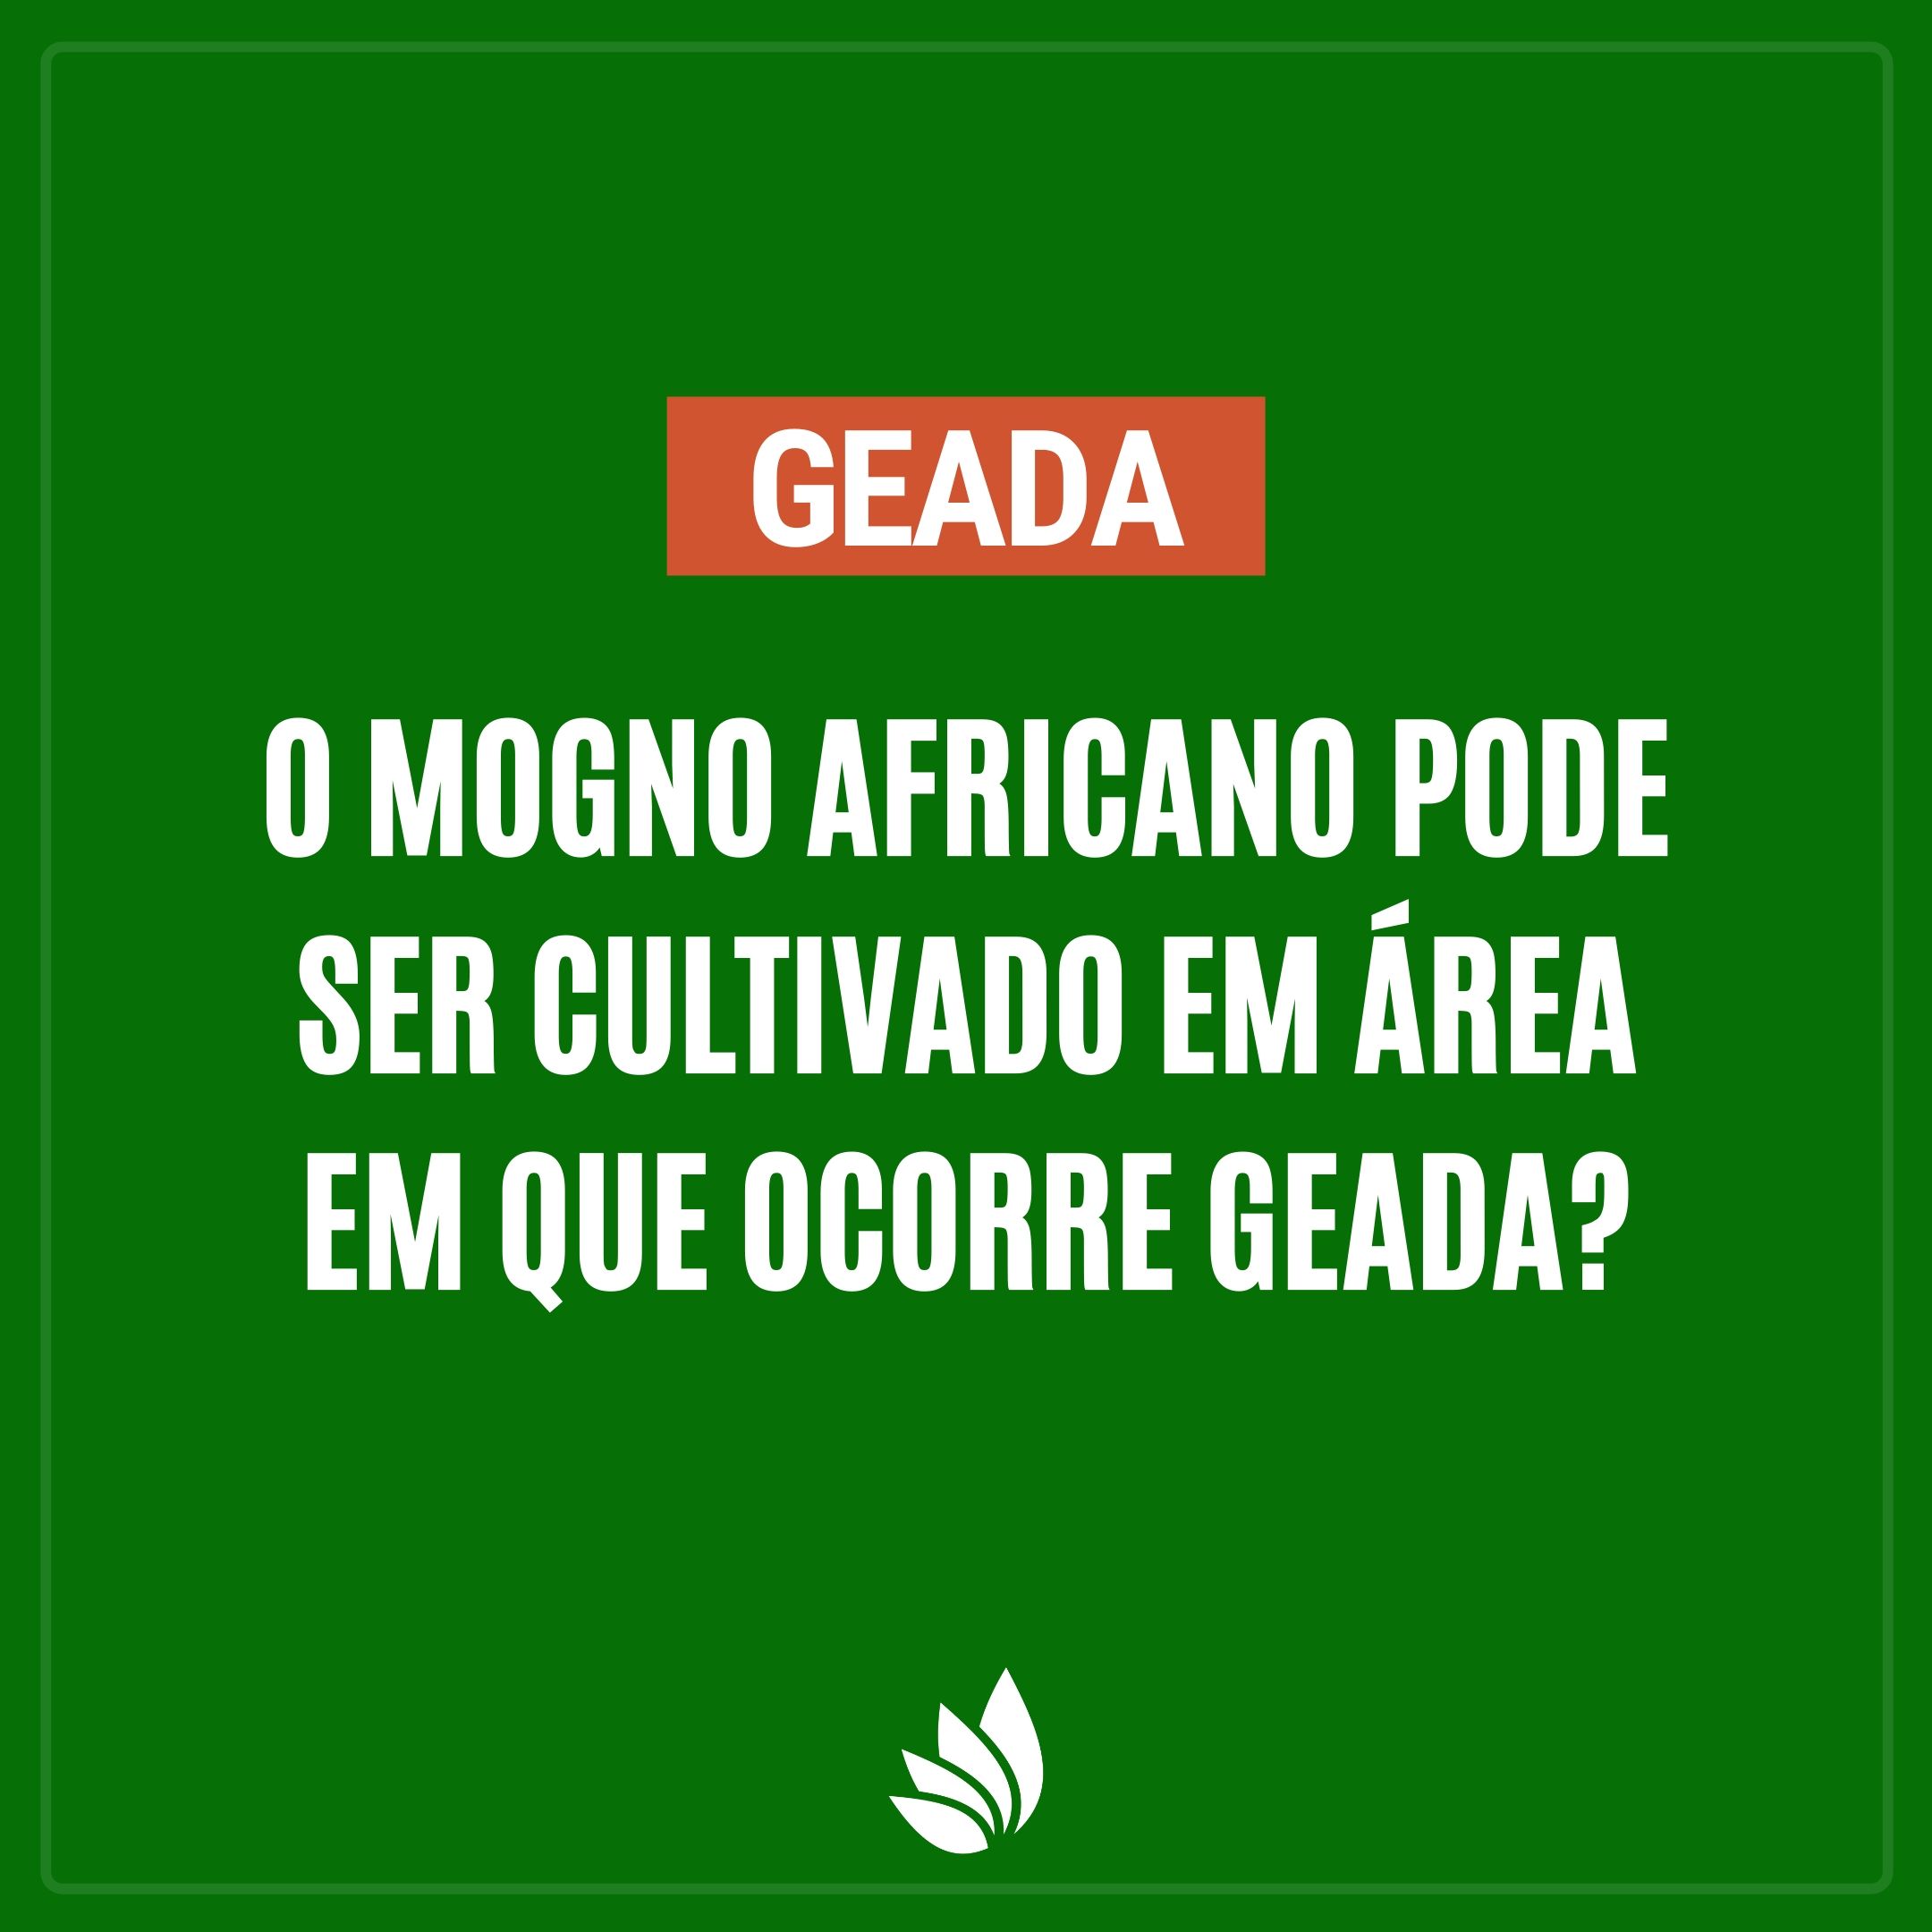 O mogno africano pode ser cultivado em área em que ocorre geada?